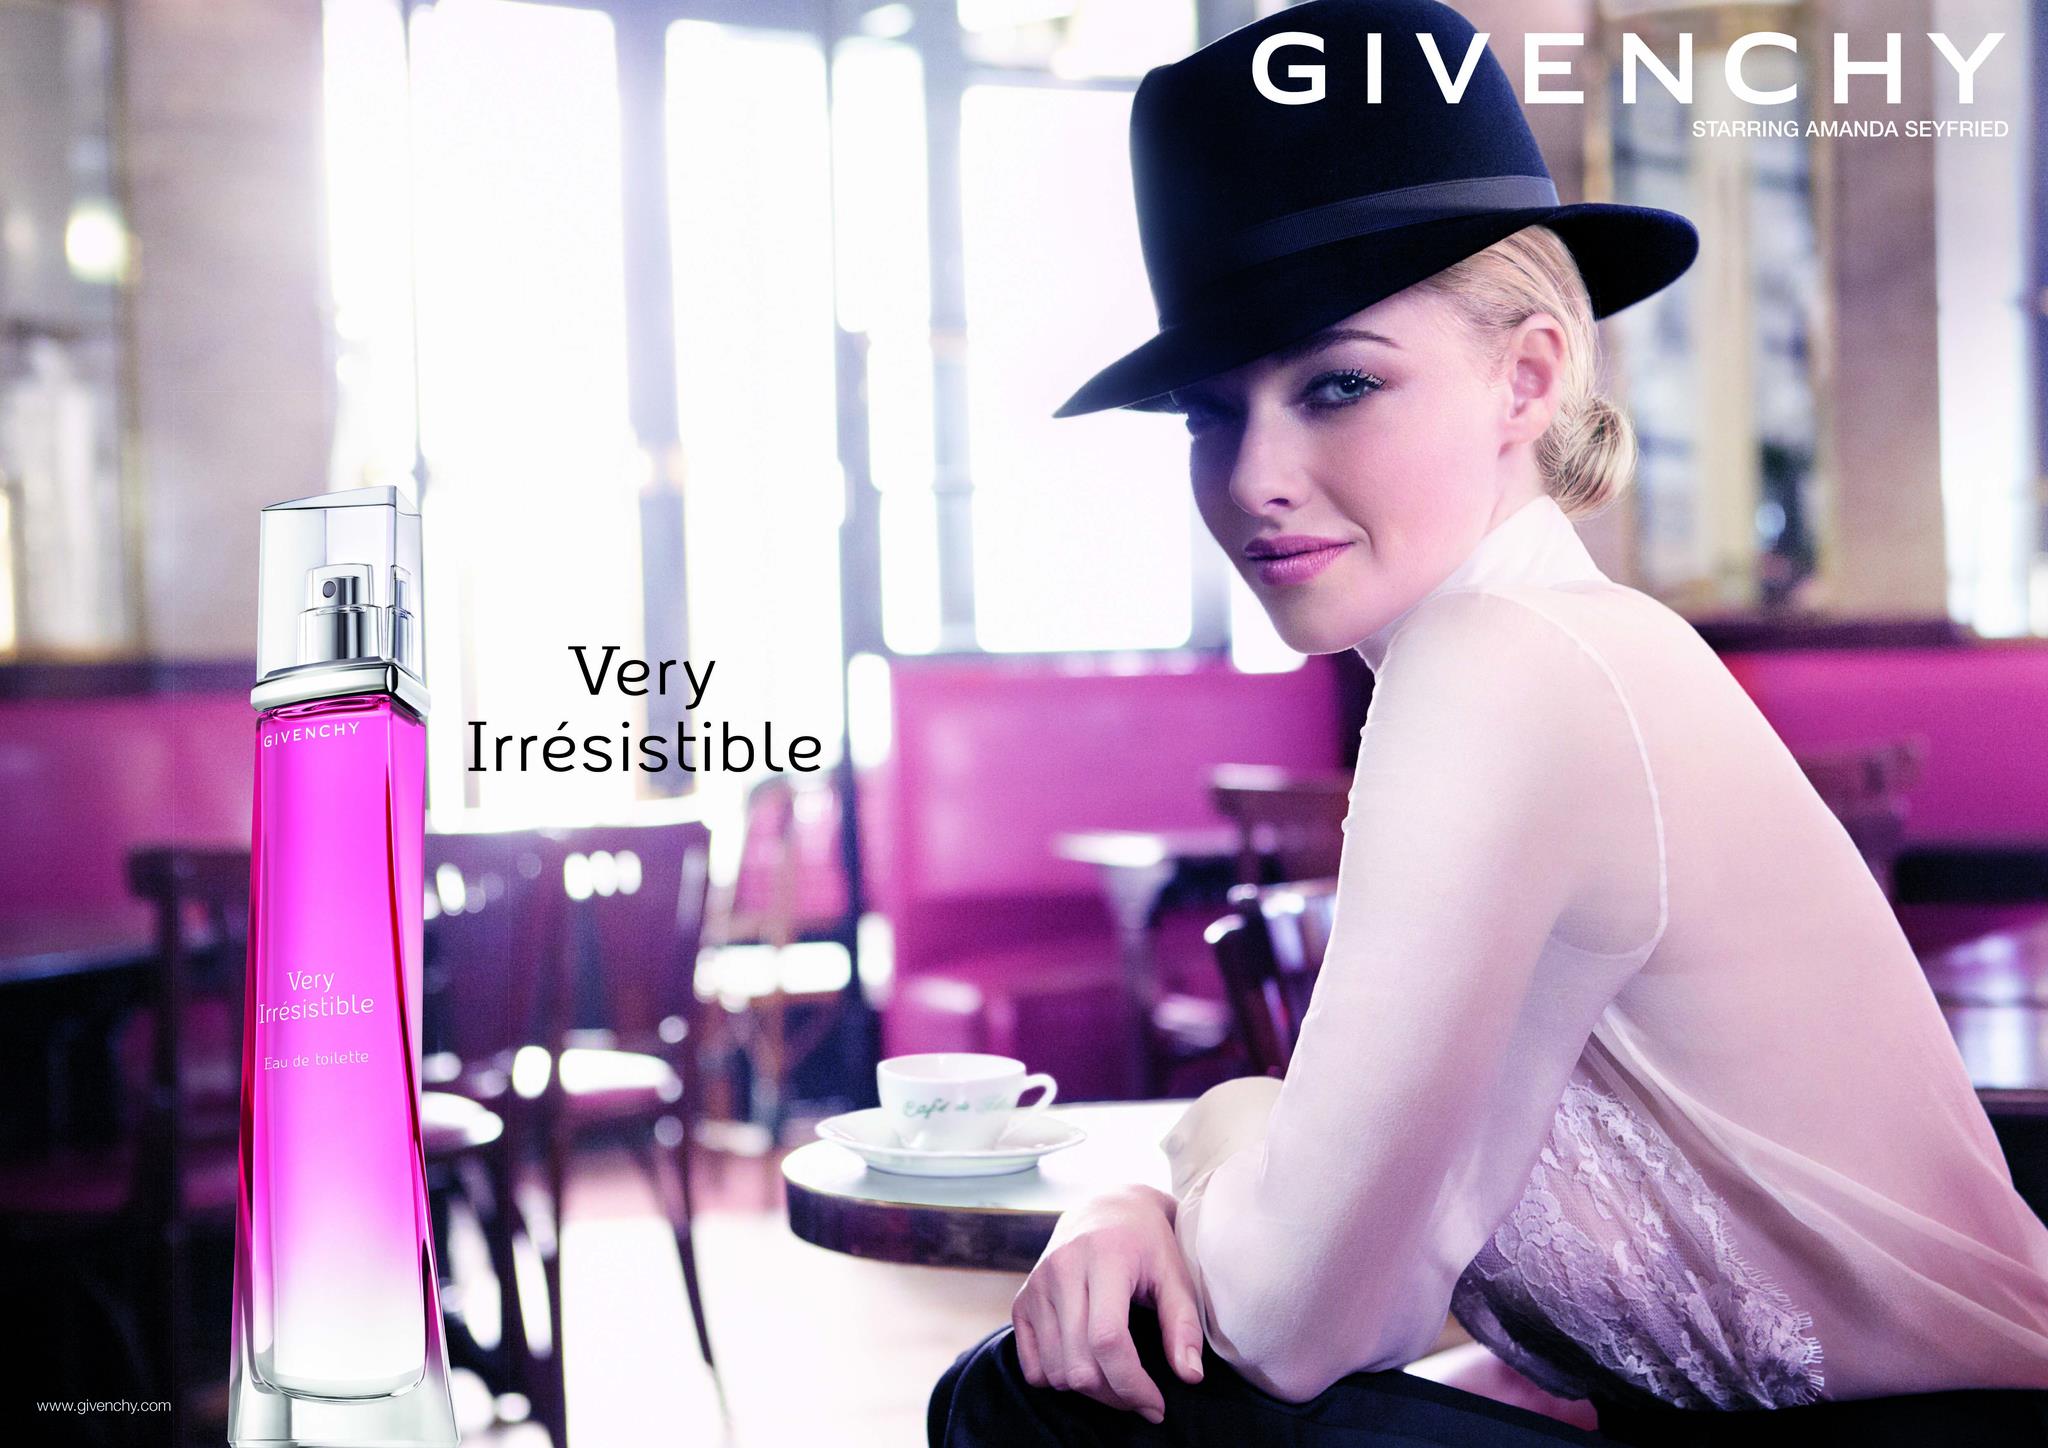 Реклама туалетной воды. Very irresistible Givenchy реклама.